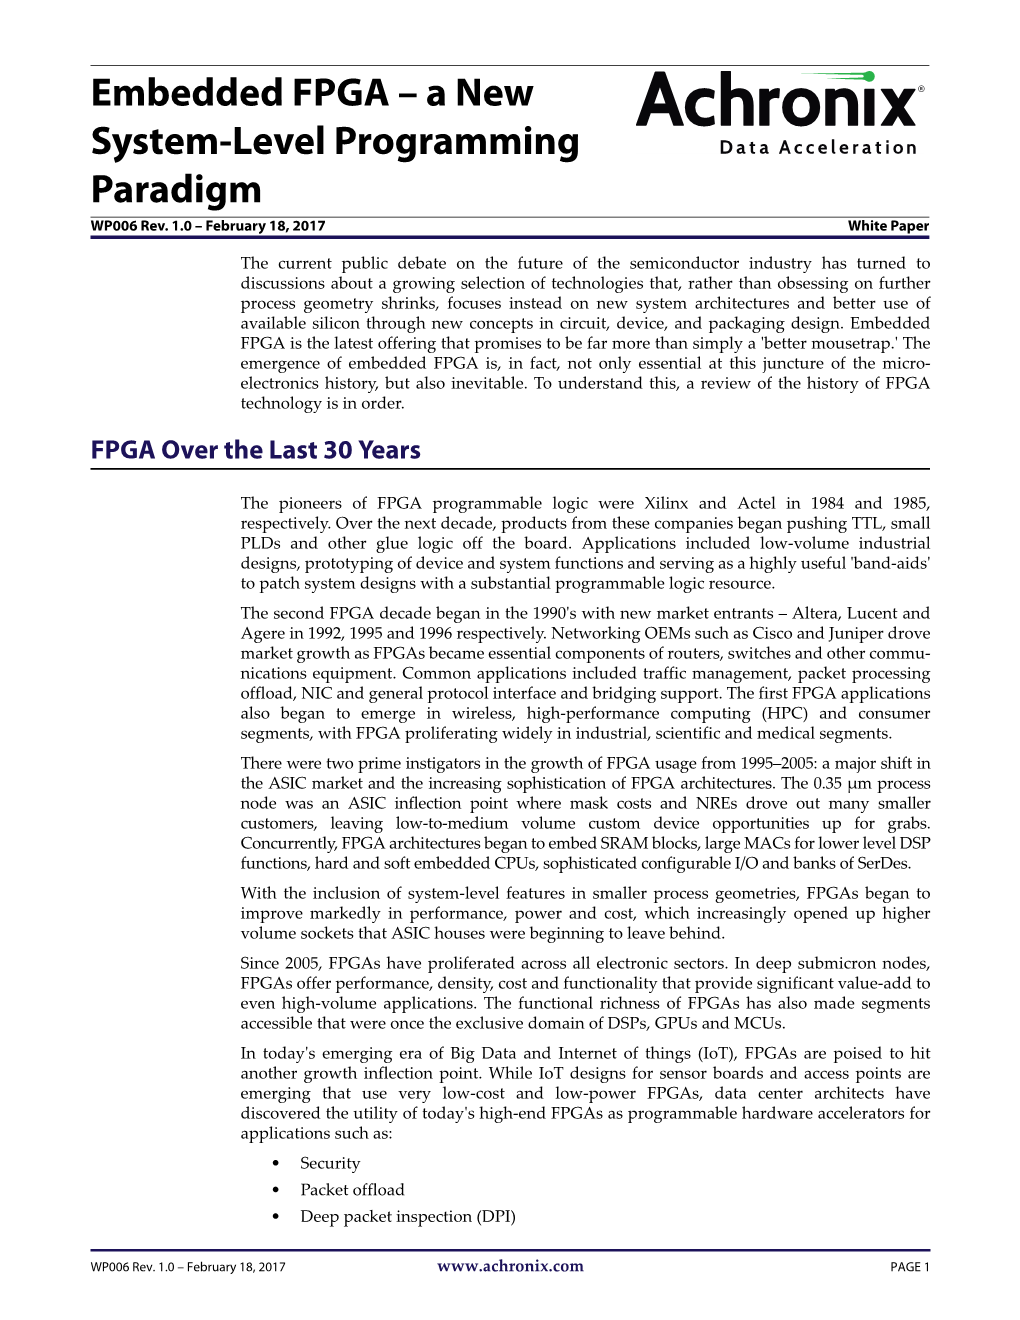 Embedded FPGA – a New System-Level Programming Paradigm WP006 Rev